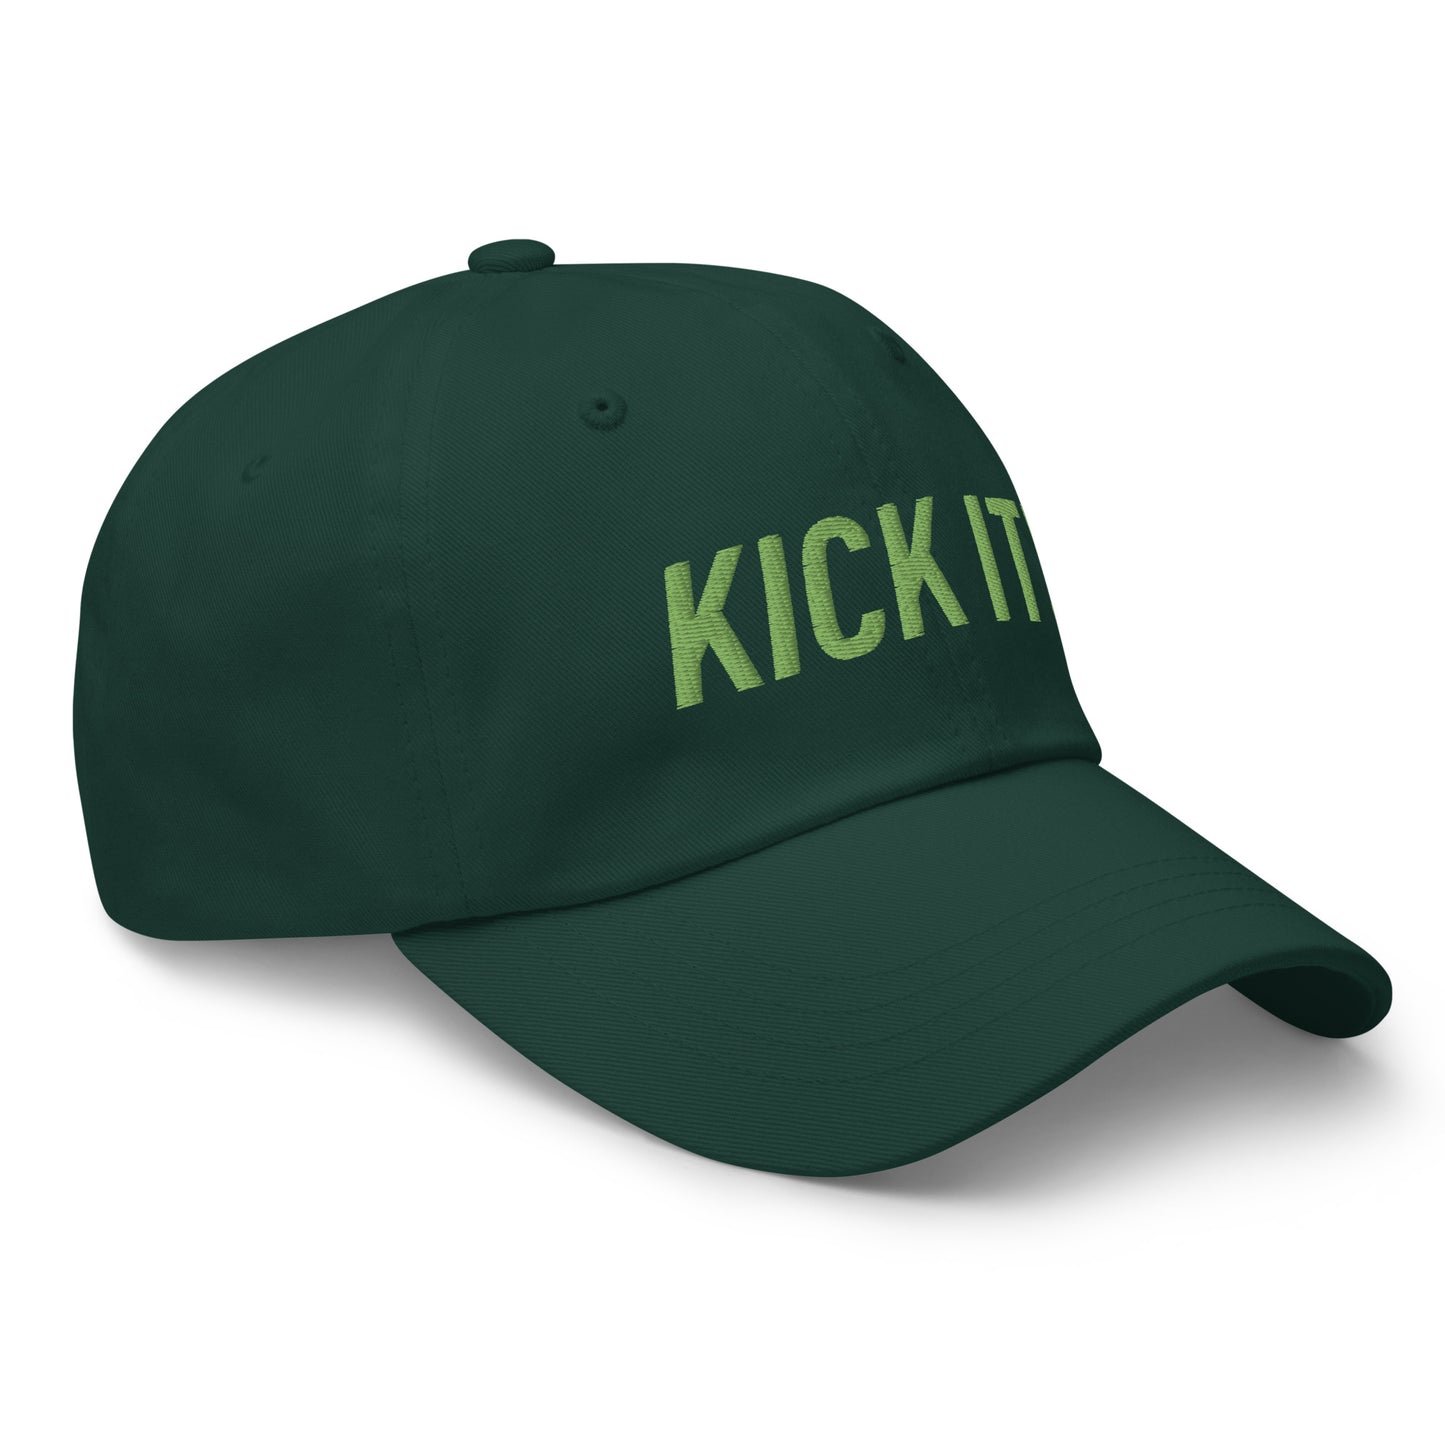 Kick it! Dad hat - Kiwi green letters